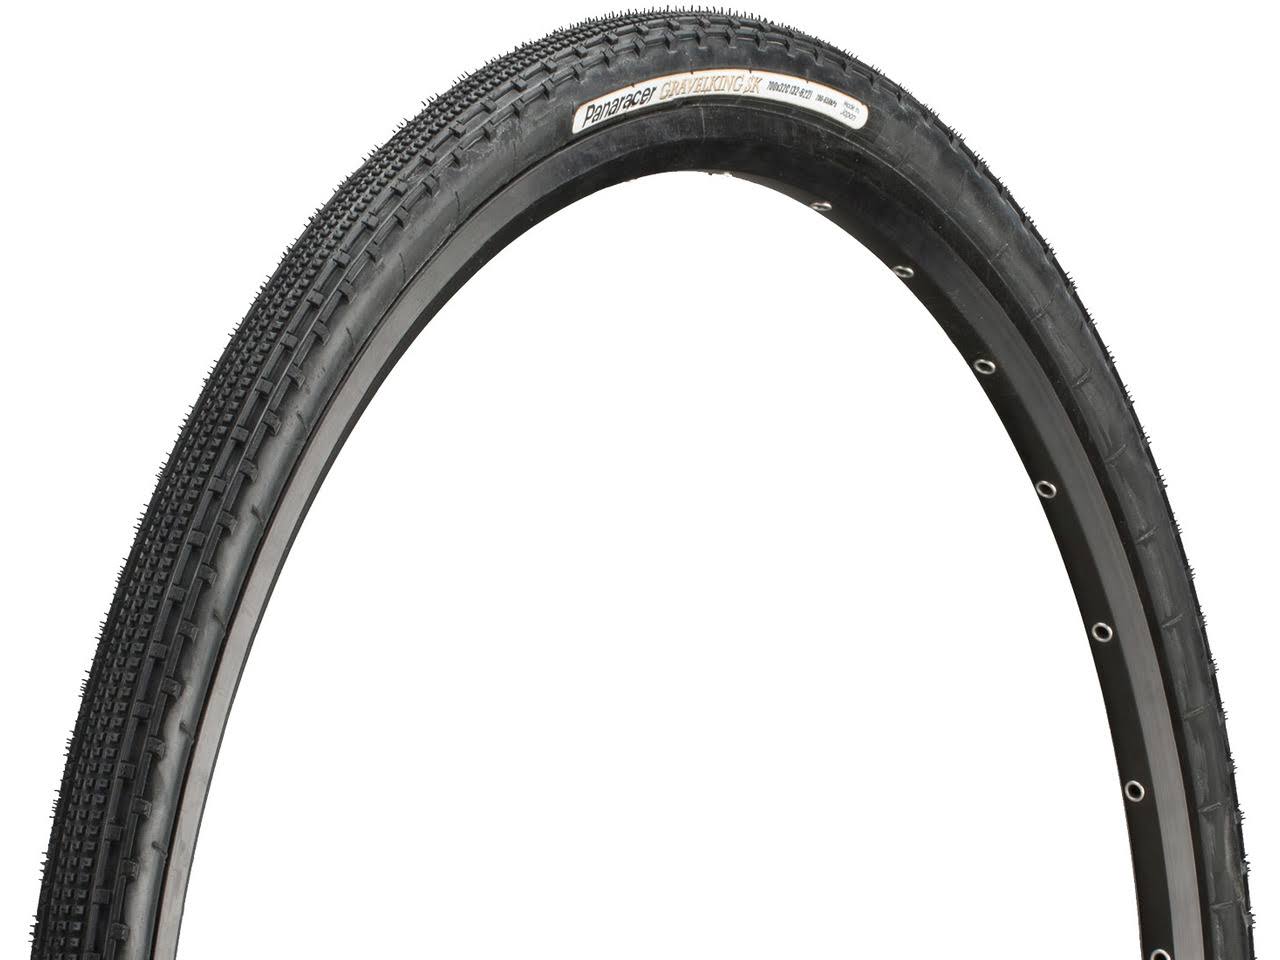 Panaracer Gravel King SK Tire - Black, 700C x 50mm